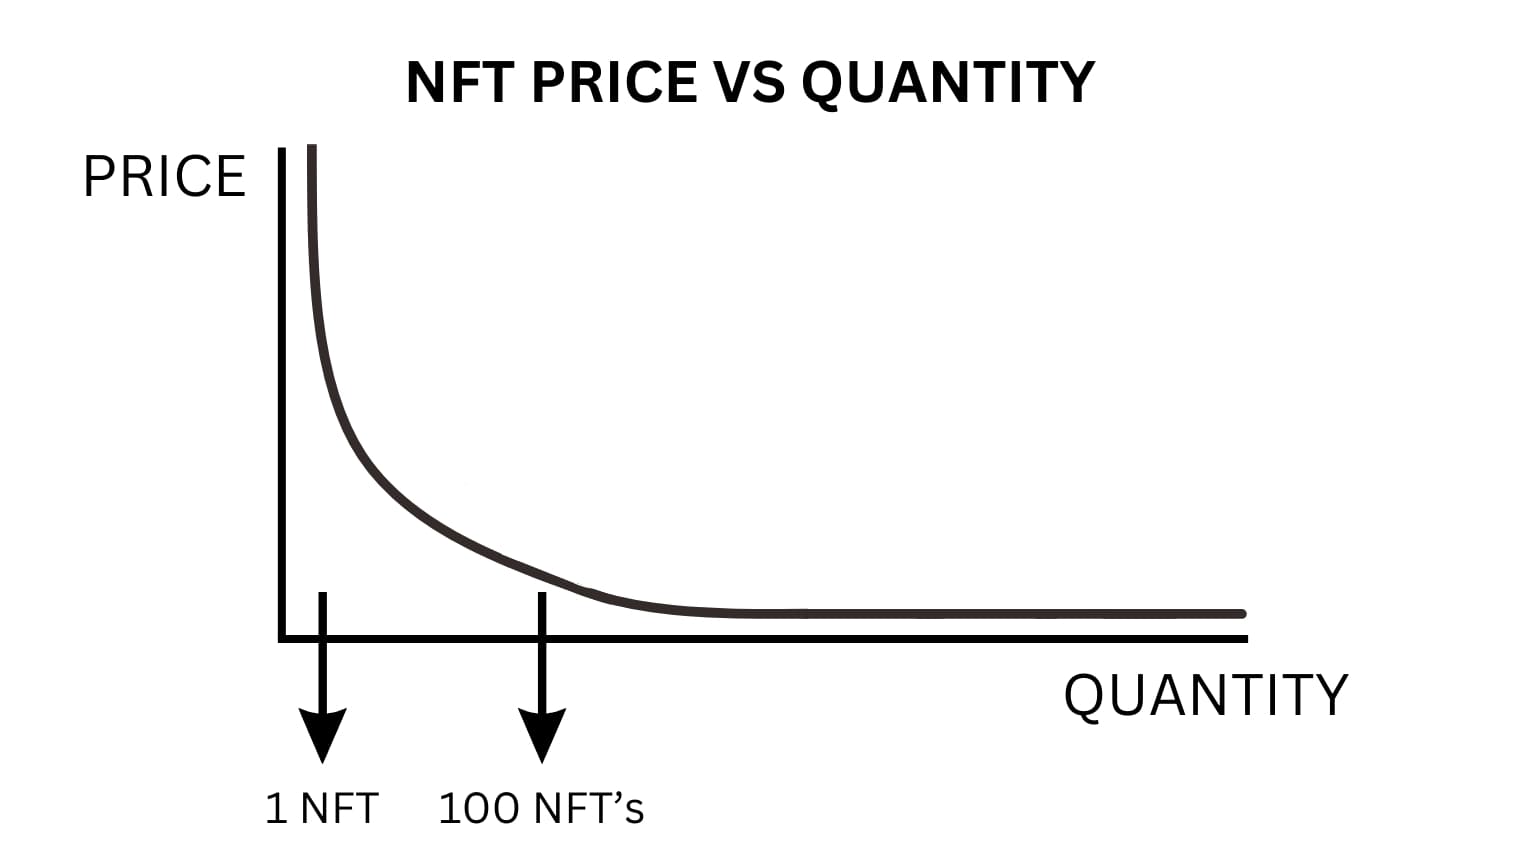 NFT scarcity